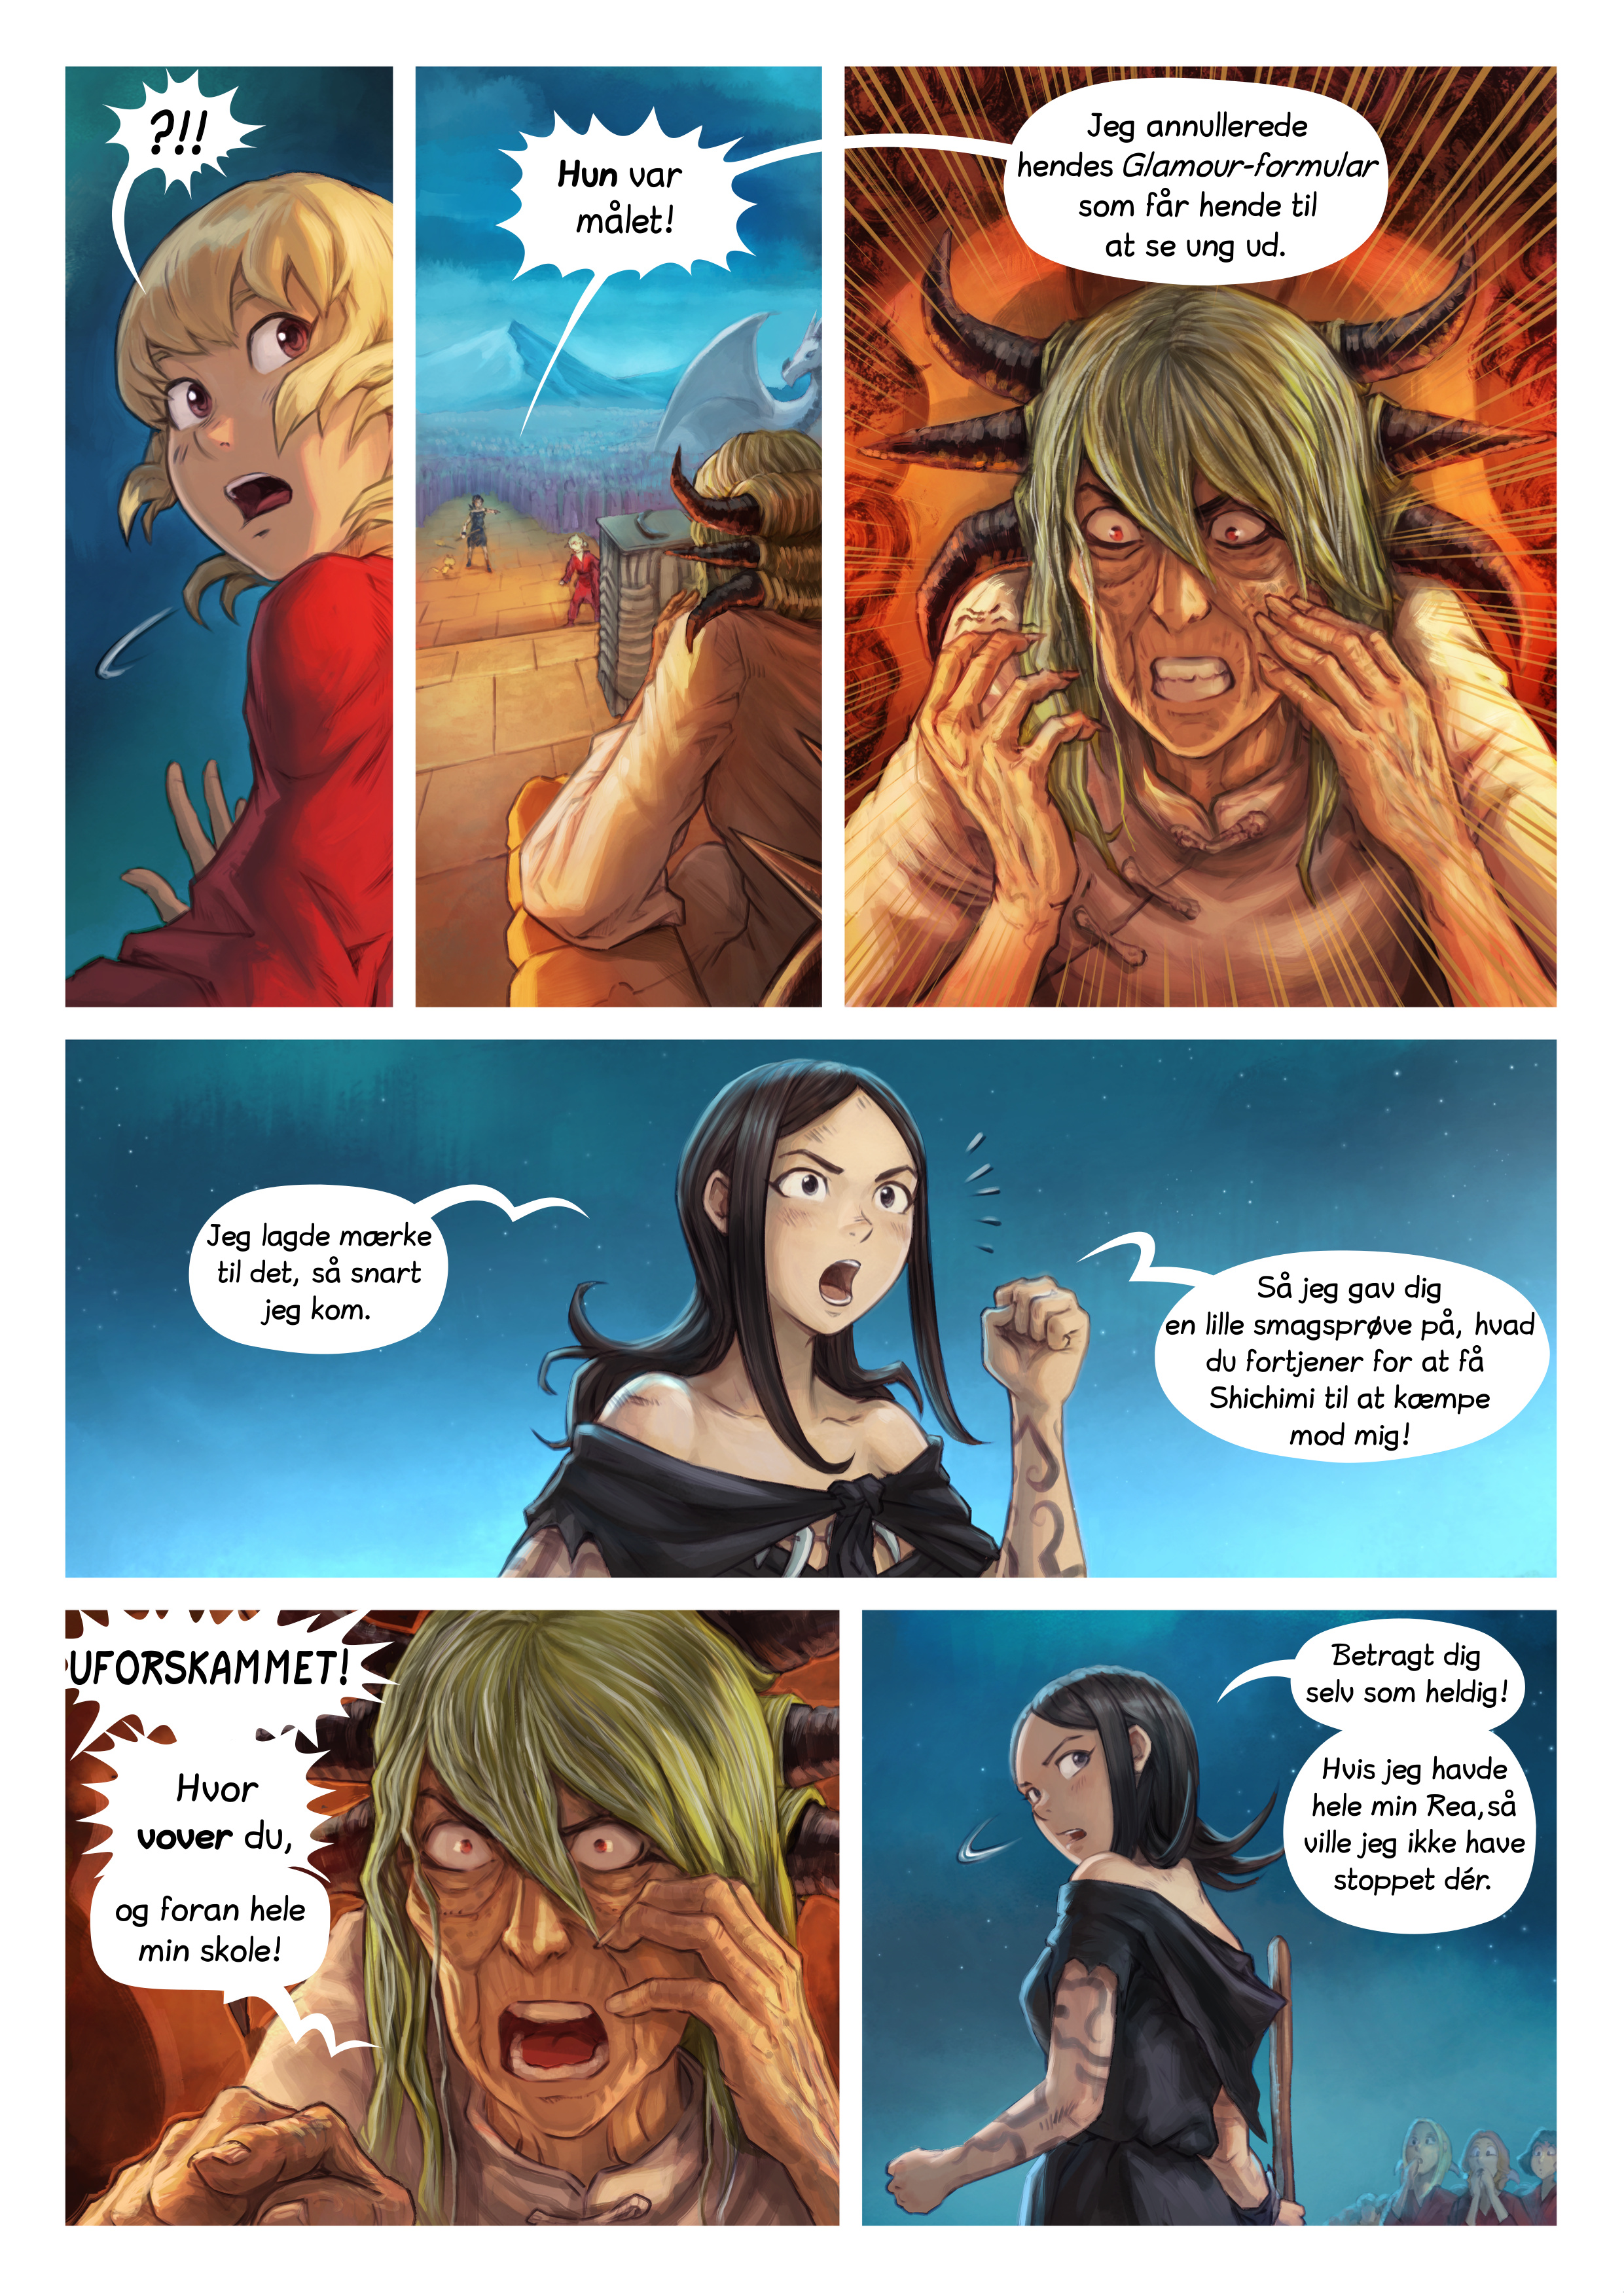 Episode 34: Shichimi slås til ridder, Page 8